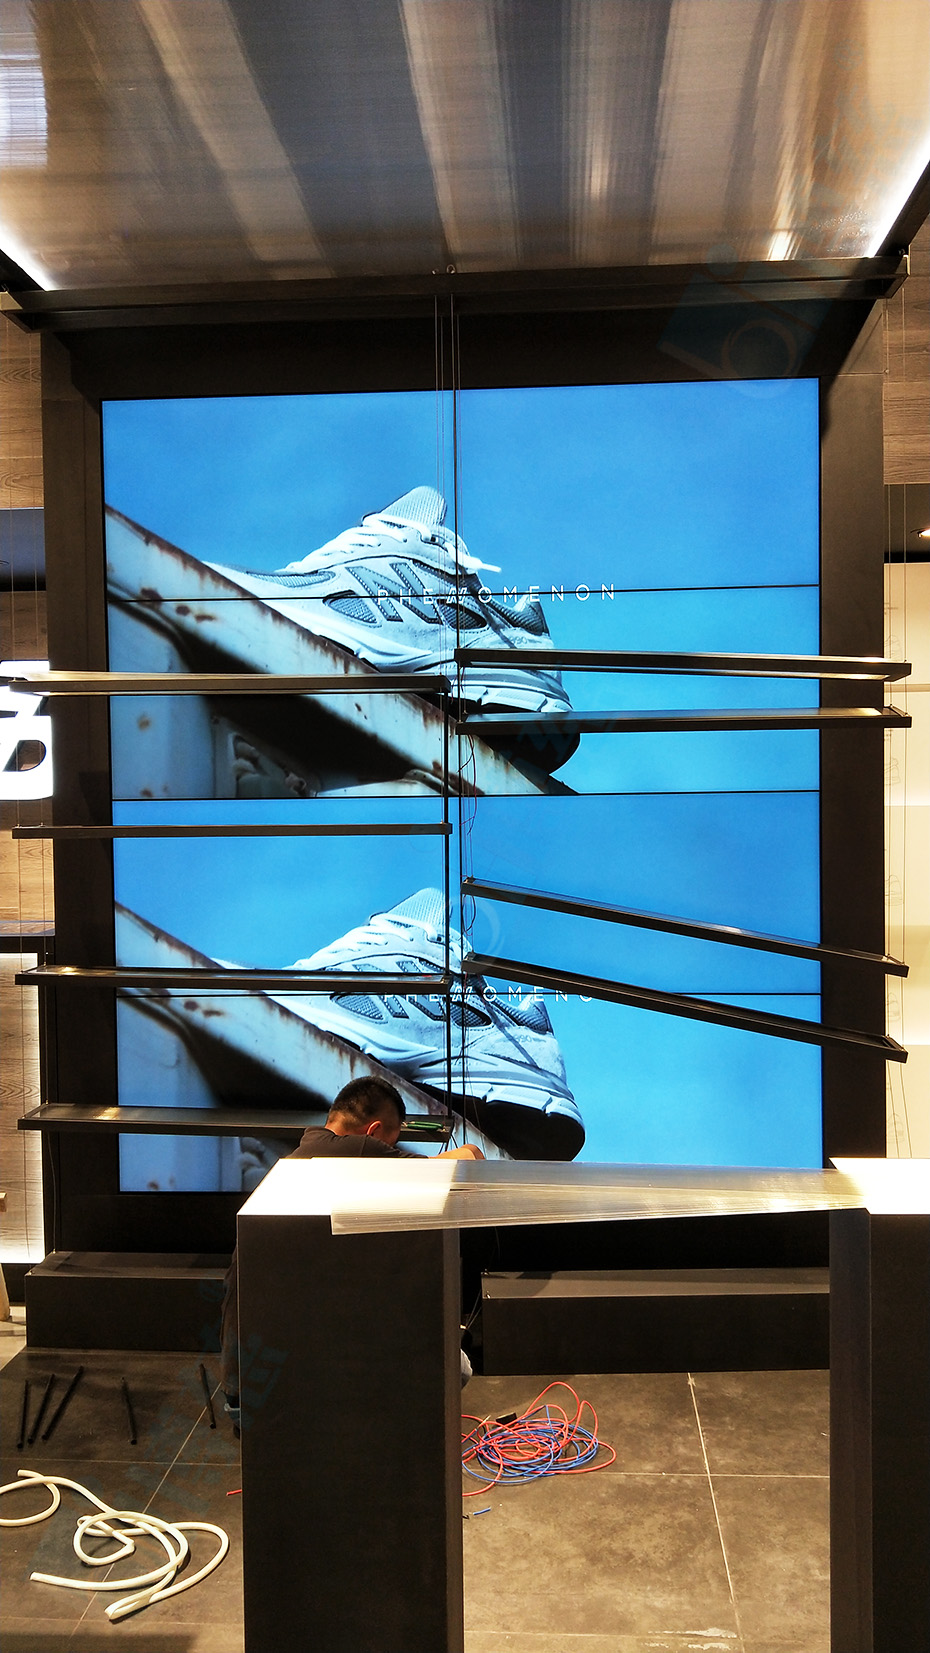 辽宁大连综合商场购物中心引进博慈液晶拼接屏打造专柜品牌展示平台